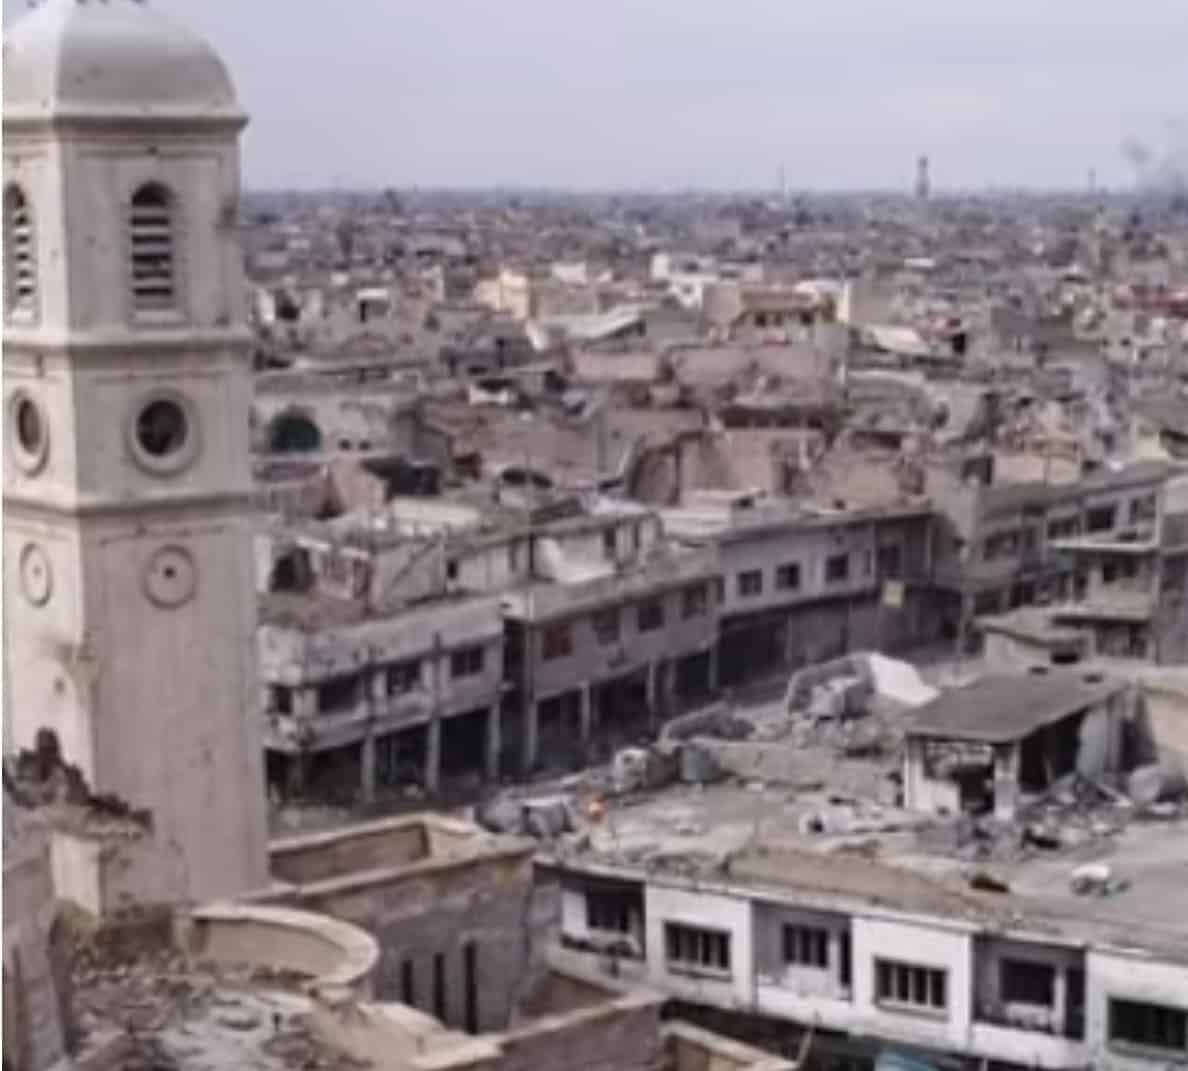 UNESCO και Ηνωμένα Αραβικά Εμιράτα: Ετοιμαστείτε να ξεκινήσετε τη διαδικασία ανοικοδόμησης του Μιναρέ Al-Hadba και των εκκλησιών Al-Sa'a και Al-Tahera τον ερχόμενο Μάρτιο